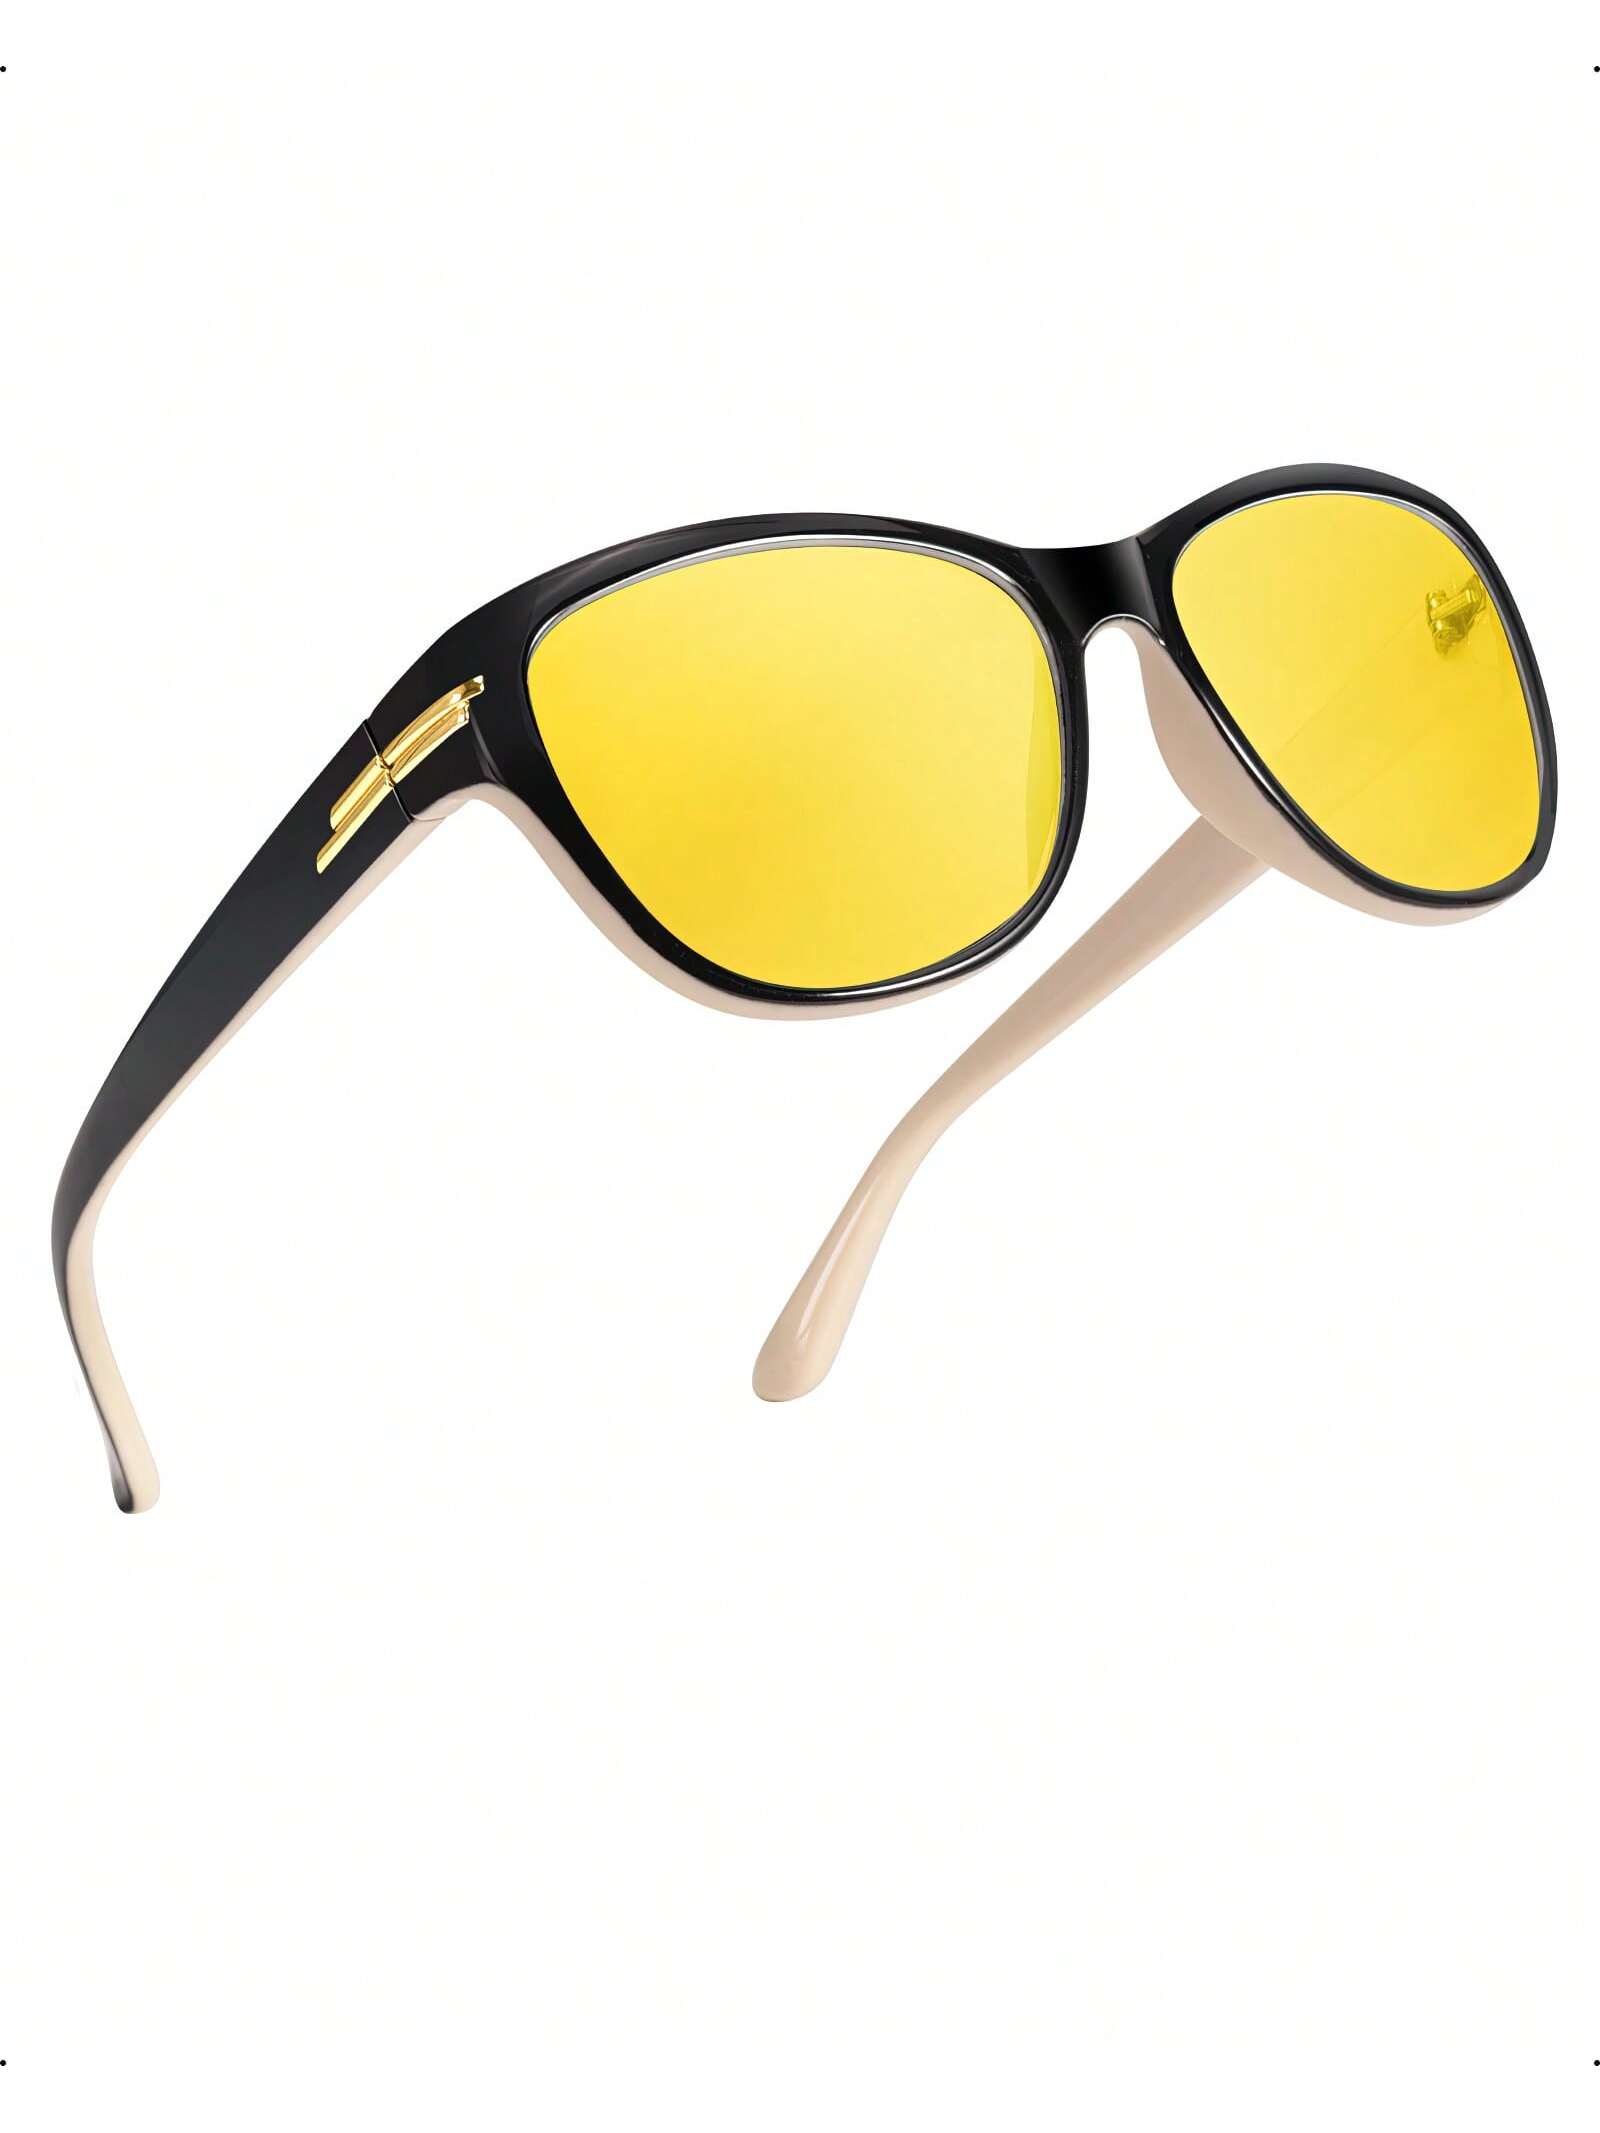 LVIOE 1 пара очков для ночного вождения для женщин и мужчин антибликовые поляризационные желтые очки ночного видения для ночного времени LN2317 очки ночного видения для вождения поляризационные модные солнцезащитные очки антибликовые желтые линзы очки ночного видения